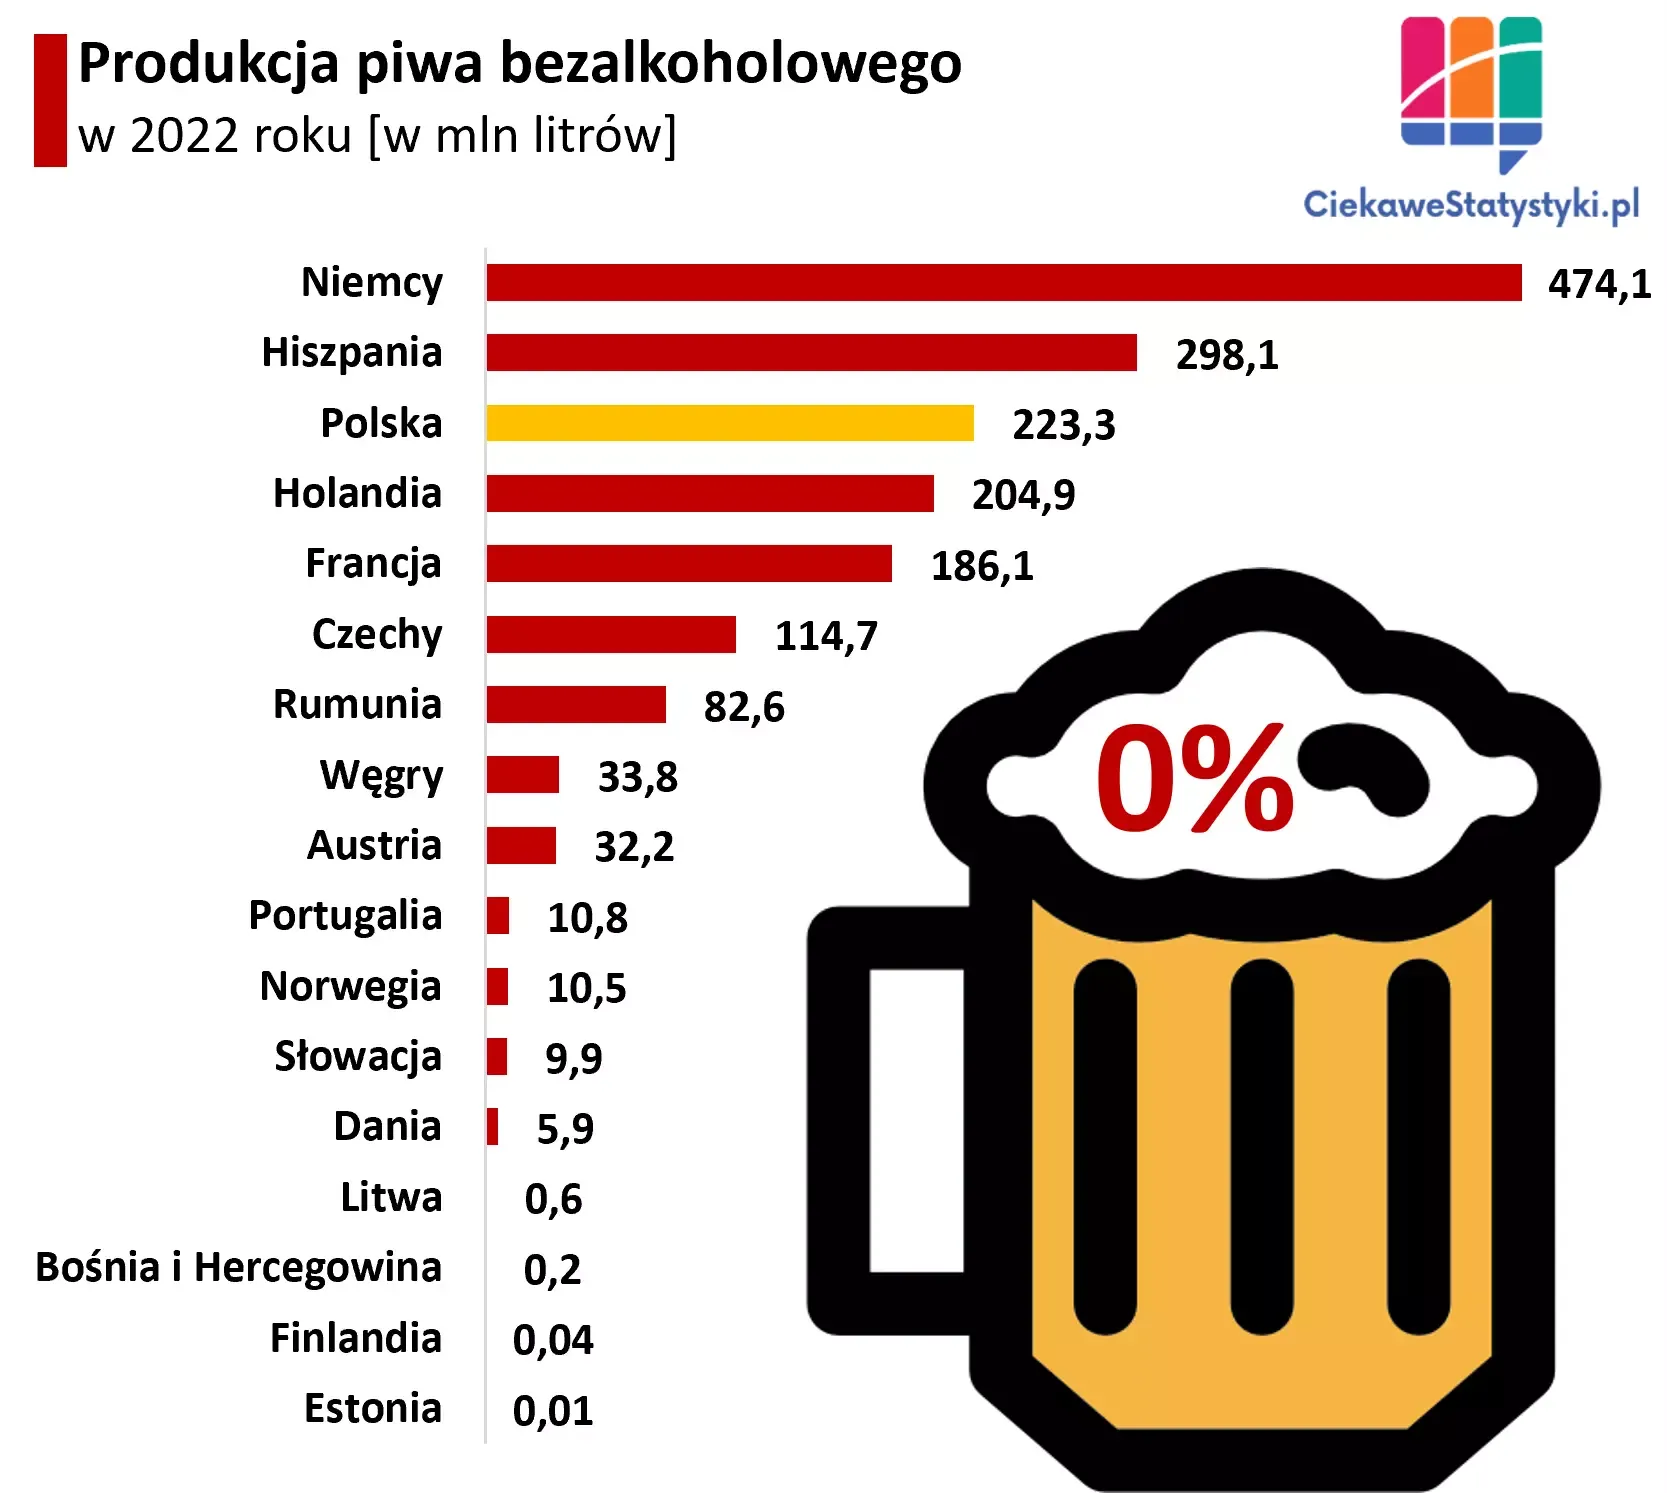 Wykres pokazuje produkcję piwa bezalkoholowego w krajach Europy